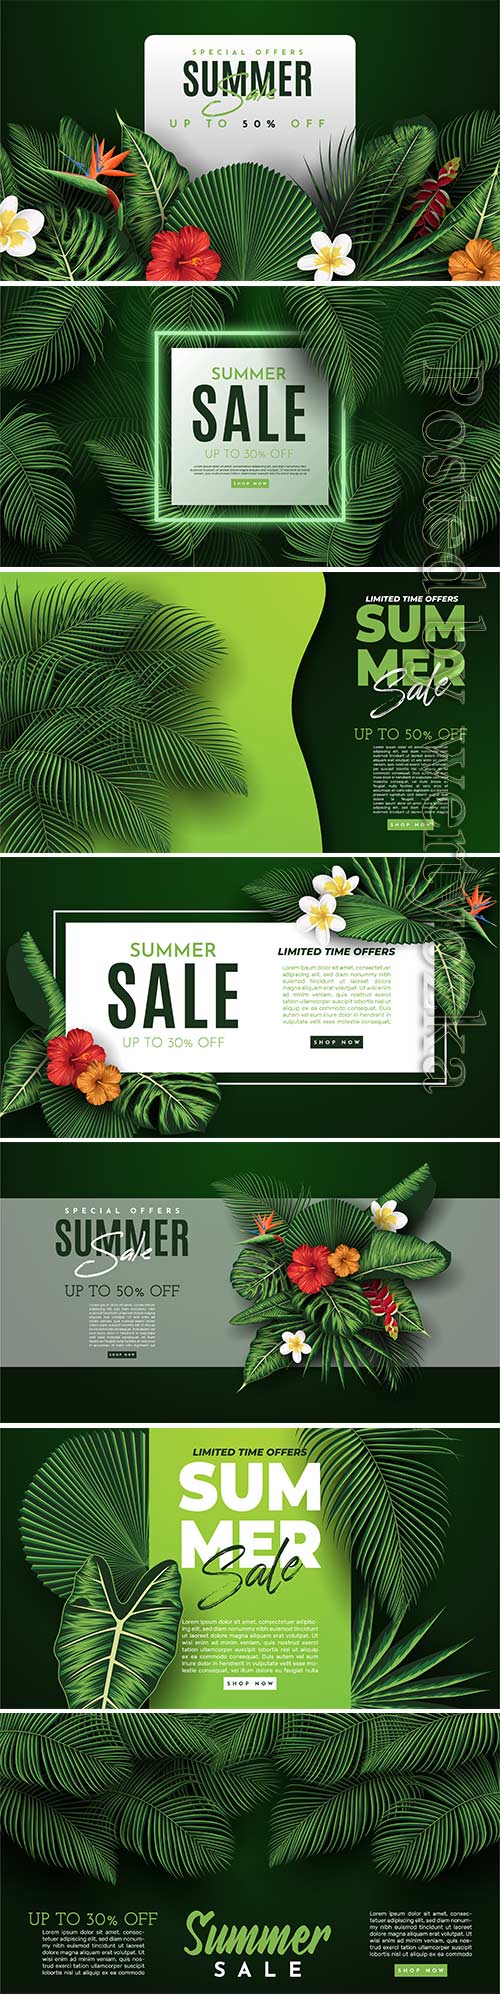 Summer sale vector banner in vector